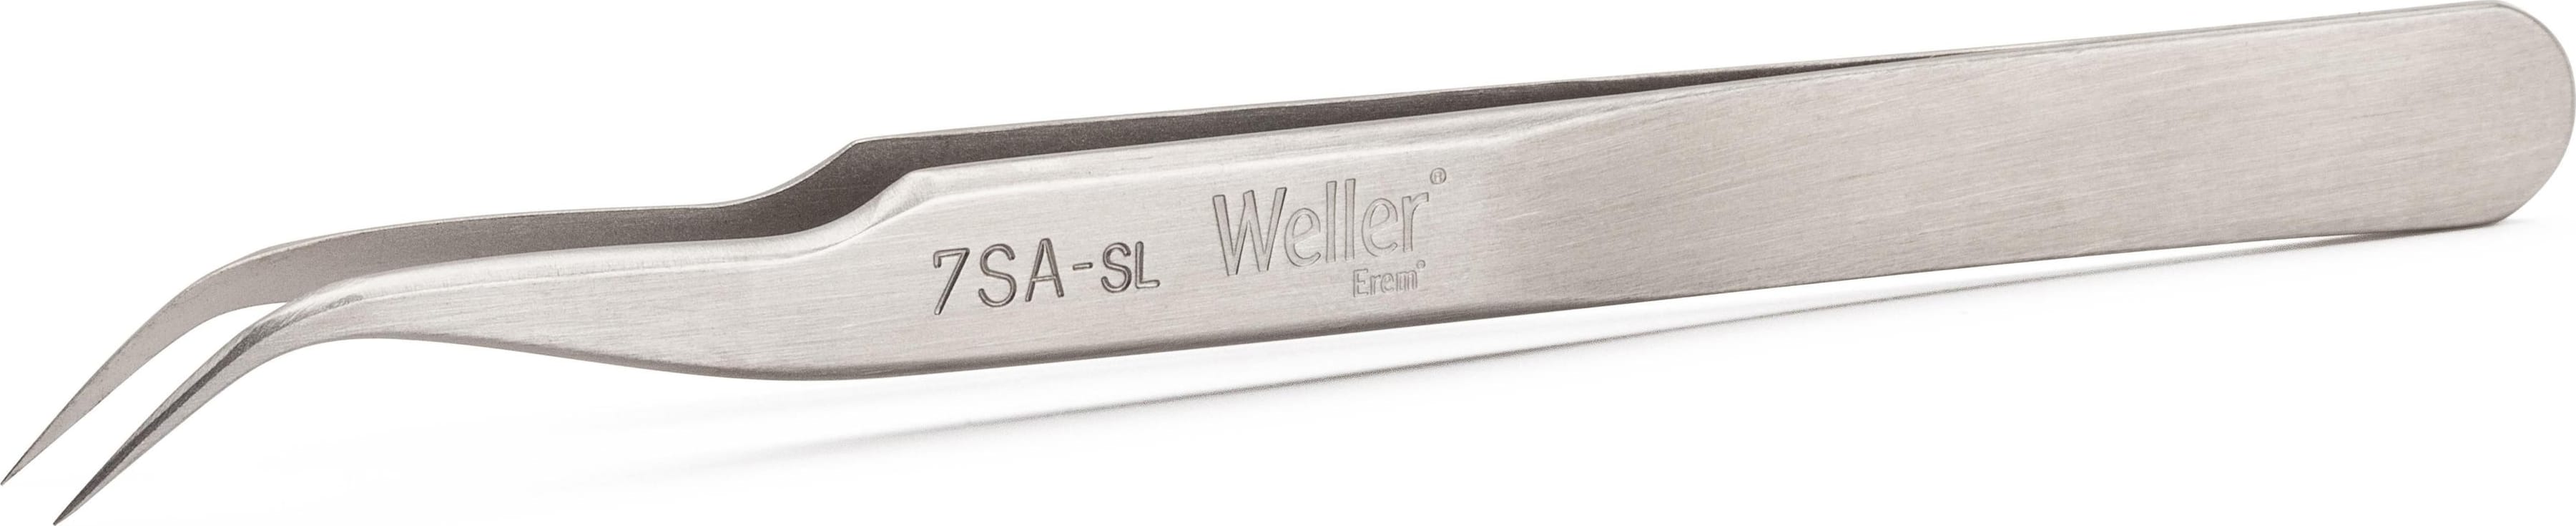 Weller 7SASL Usage Image 1